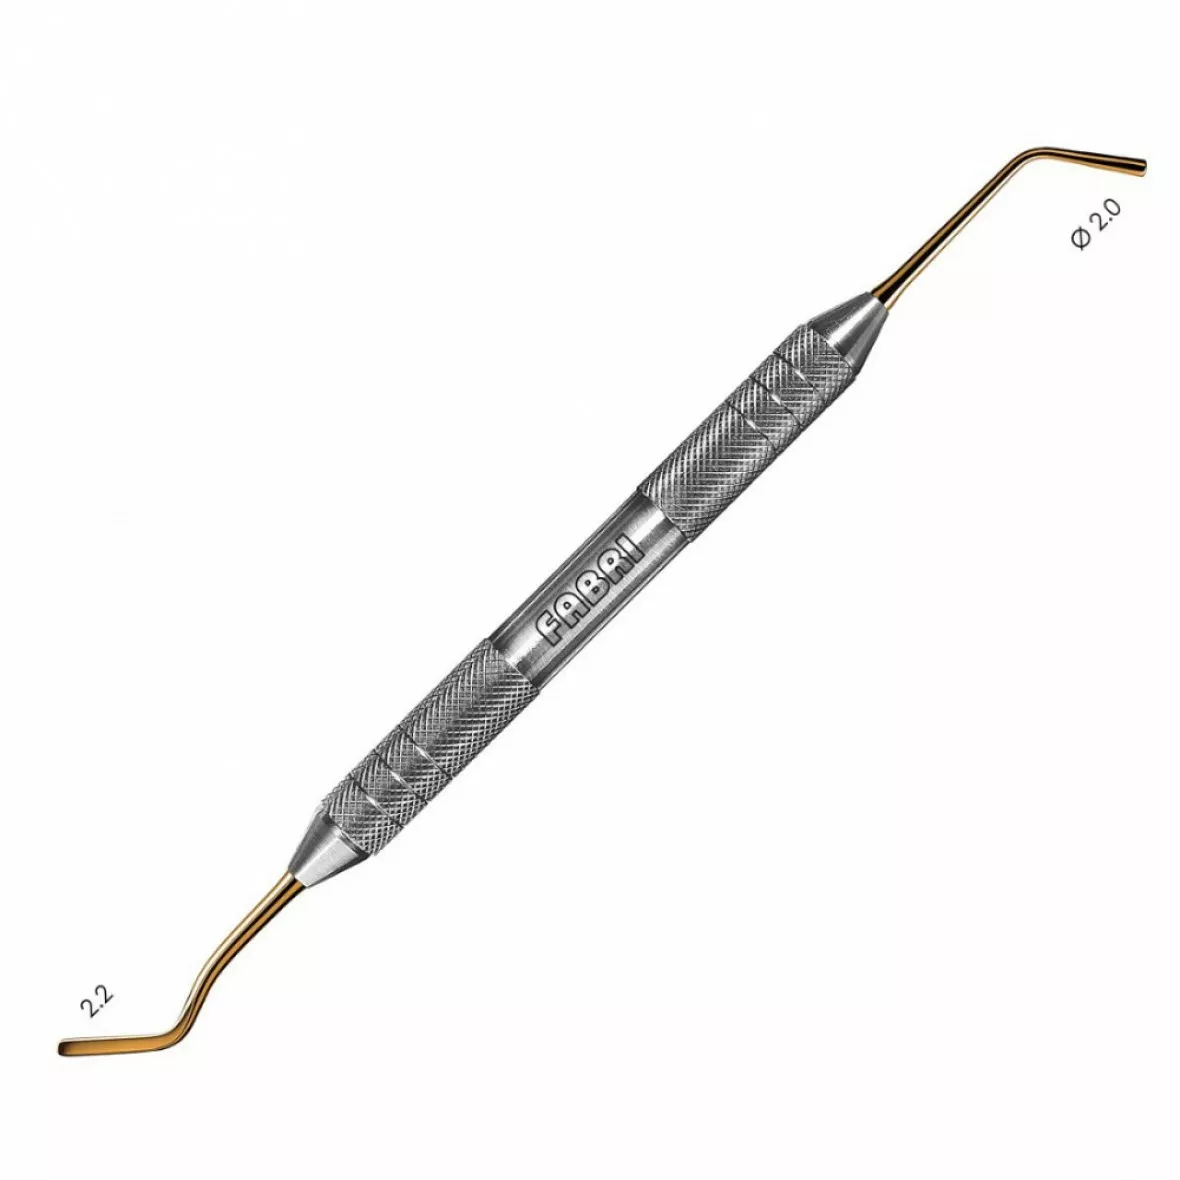 1324F TiN-Удлиненная средняя гладилка с обратноконусовидным штопфером  2mm. Эргономичная ручка  10mm. Покрытие Gold